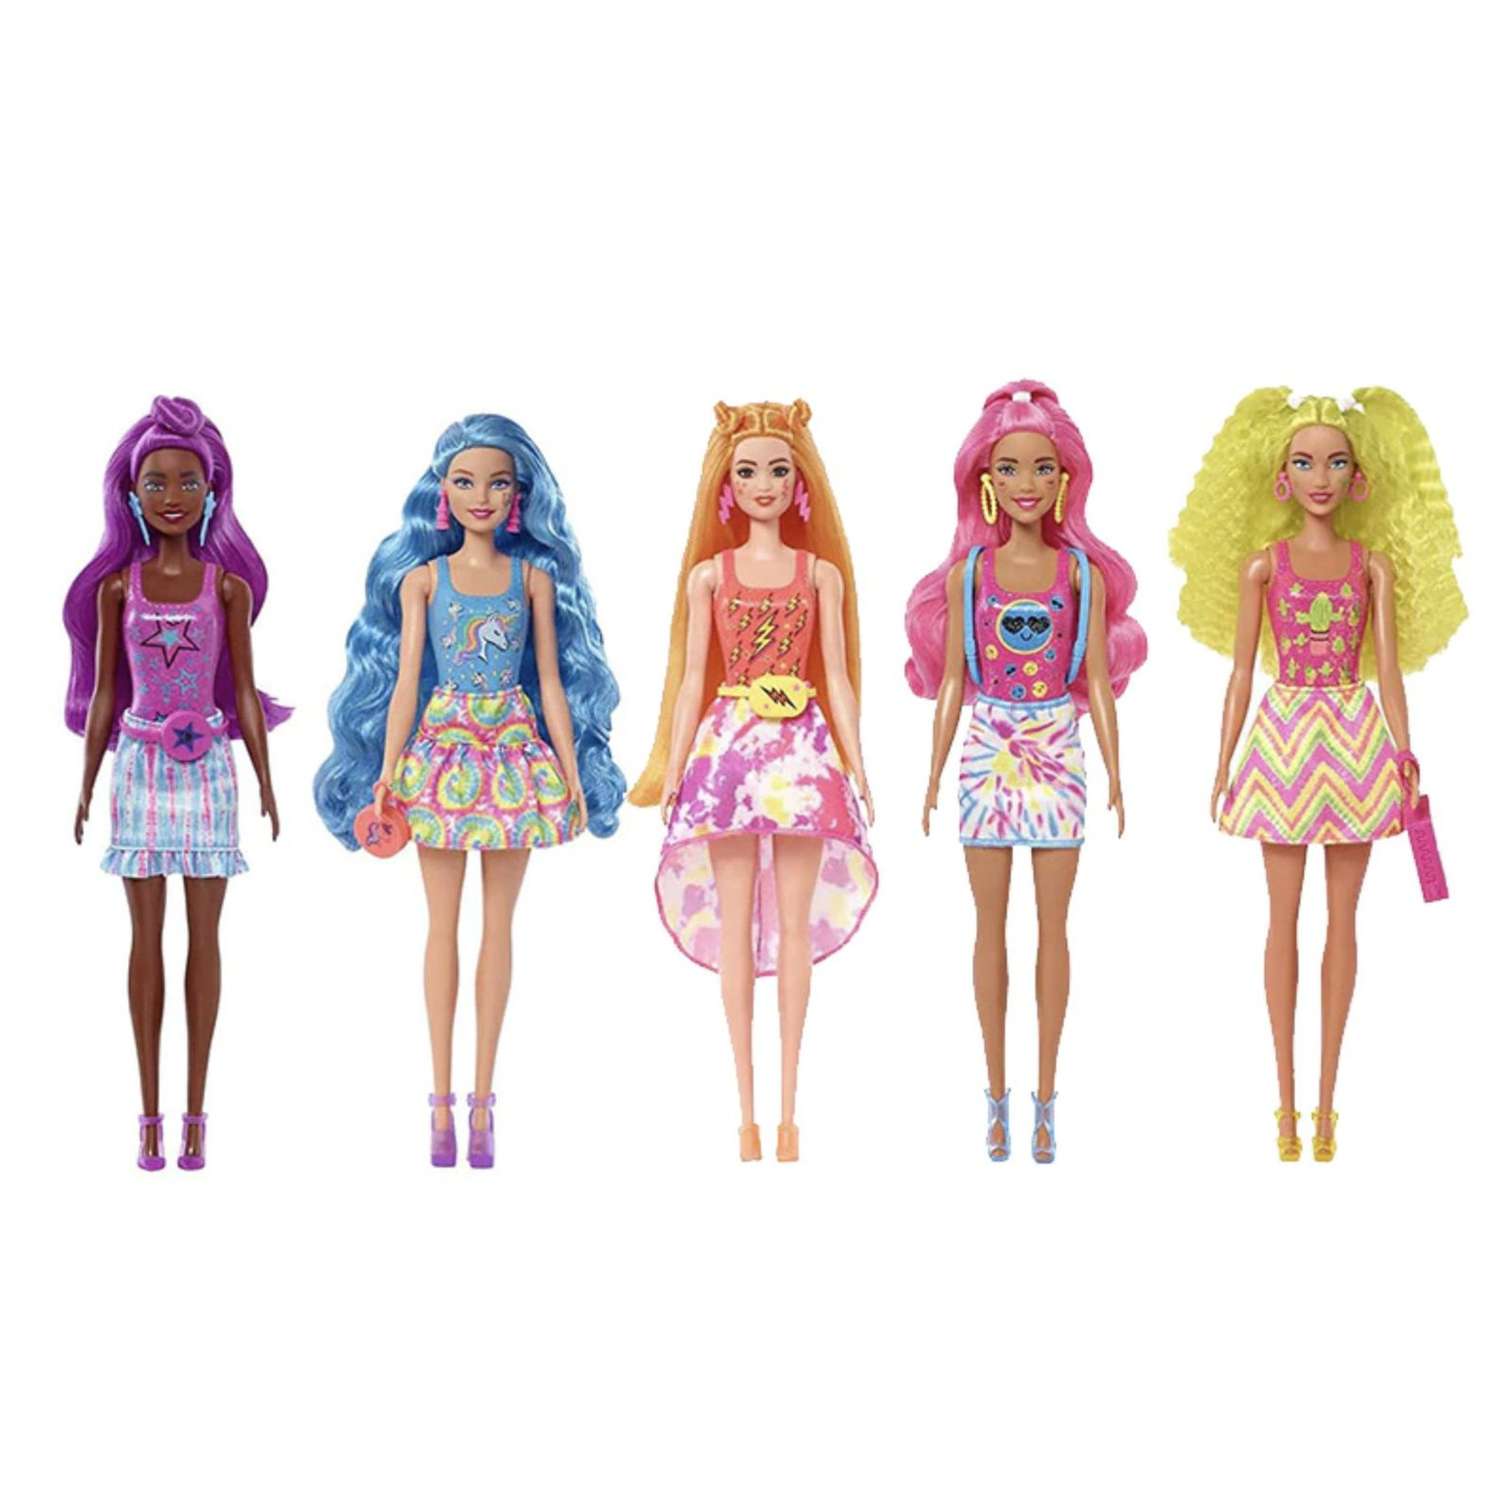 Кукла Barbie меняющая цвет в непрозрачной упаковке (Сюрприз) HDN72 HDN72 - фото 6